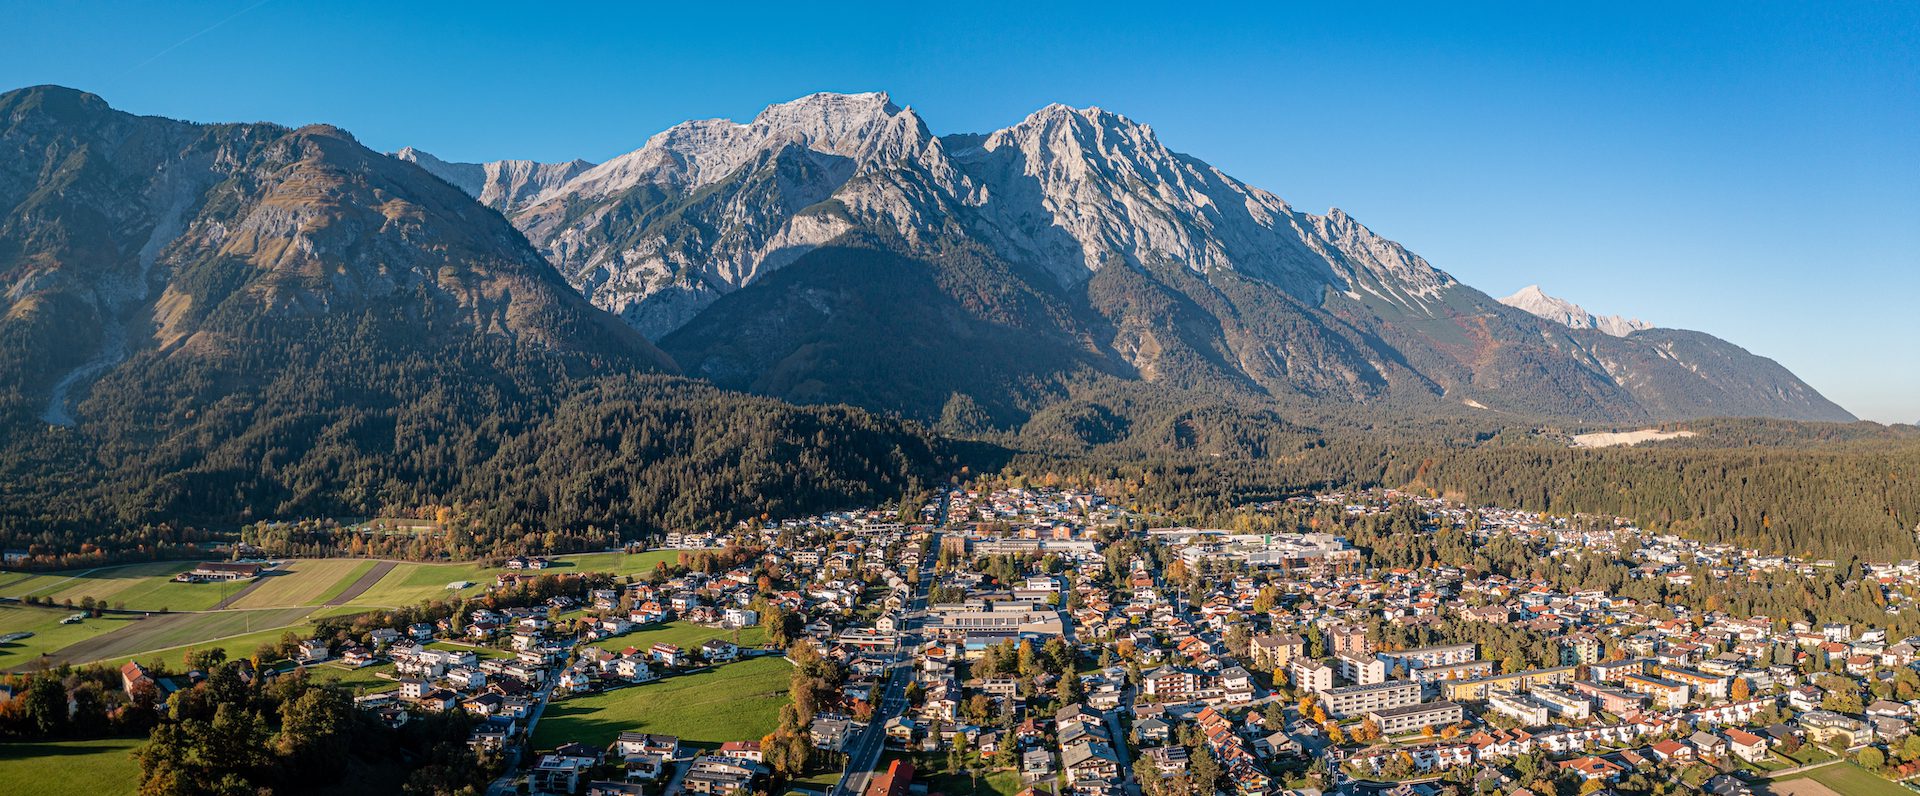 Innsbruckin laakso